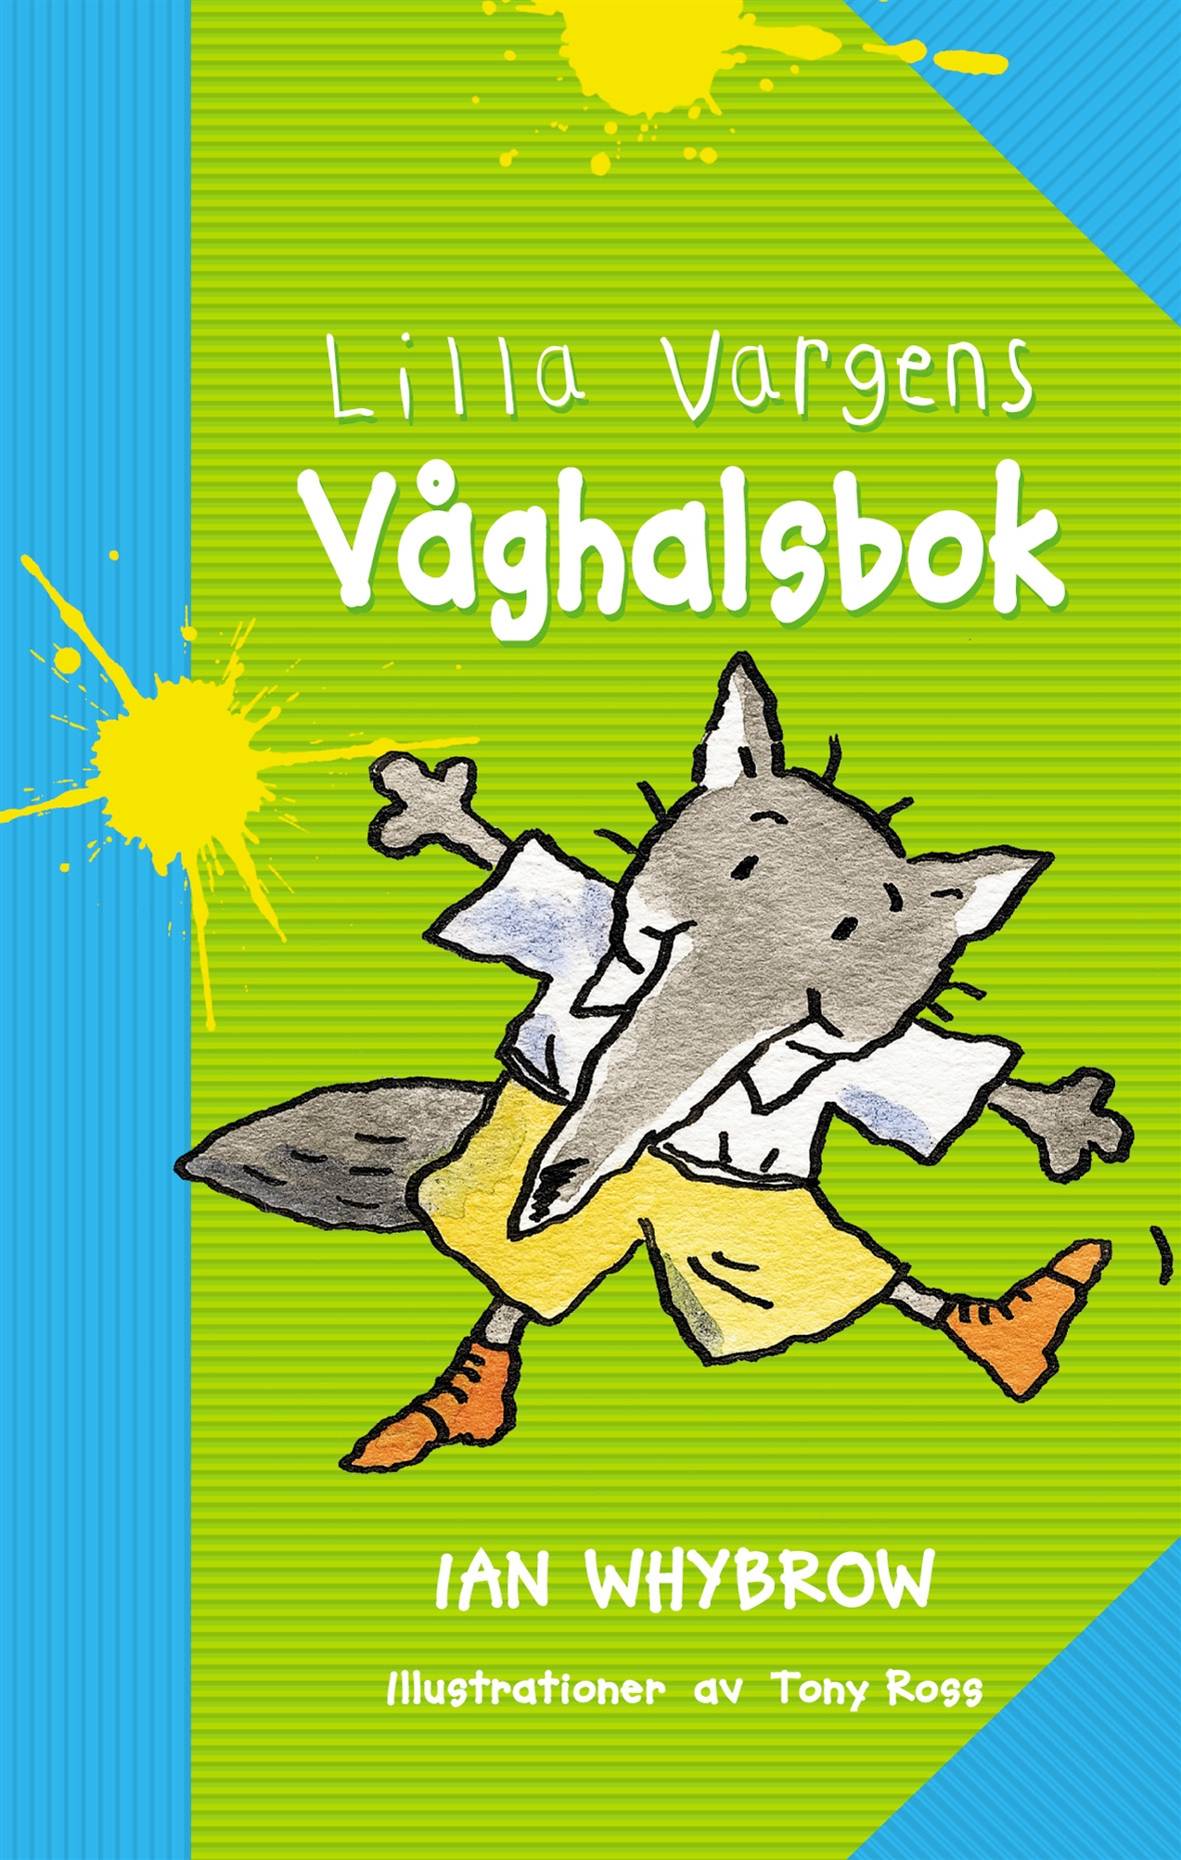 Lilla Vargens våghalsbok